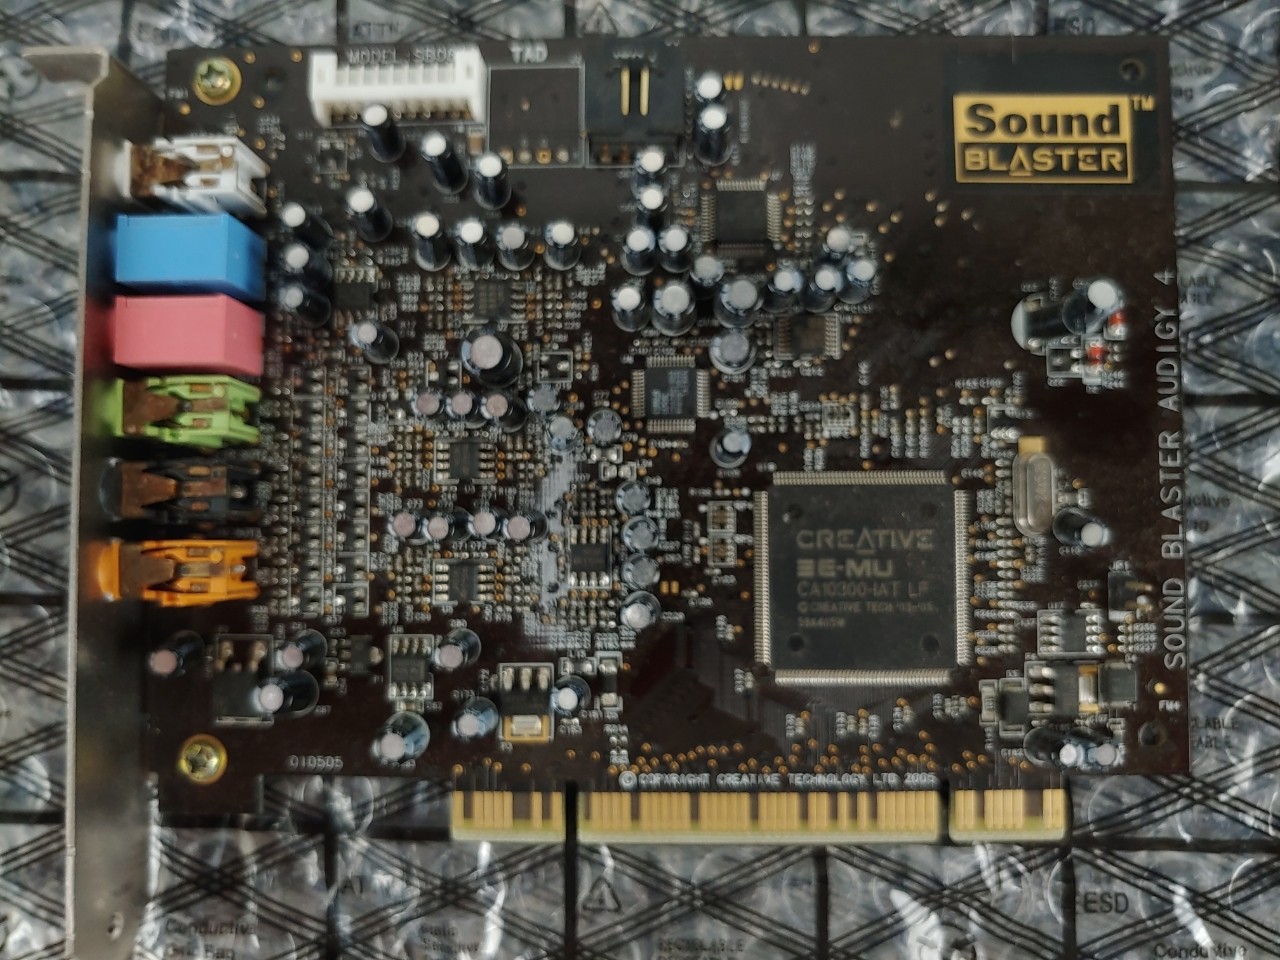 Sound Blaster Audigy 4 SB0610 7.1 Channel 24-bit 192-KHz PCI Sound Card Tested